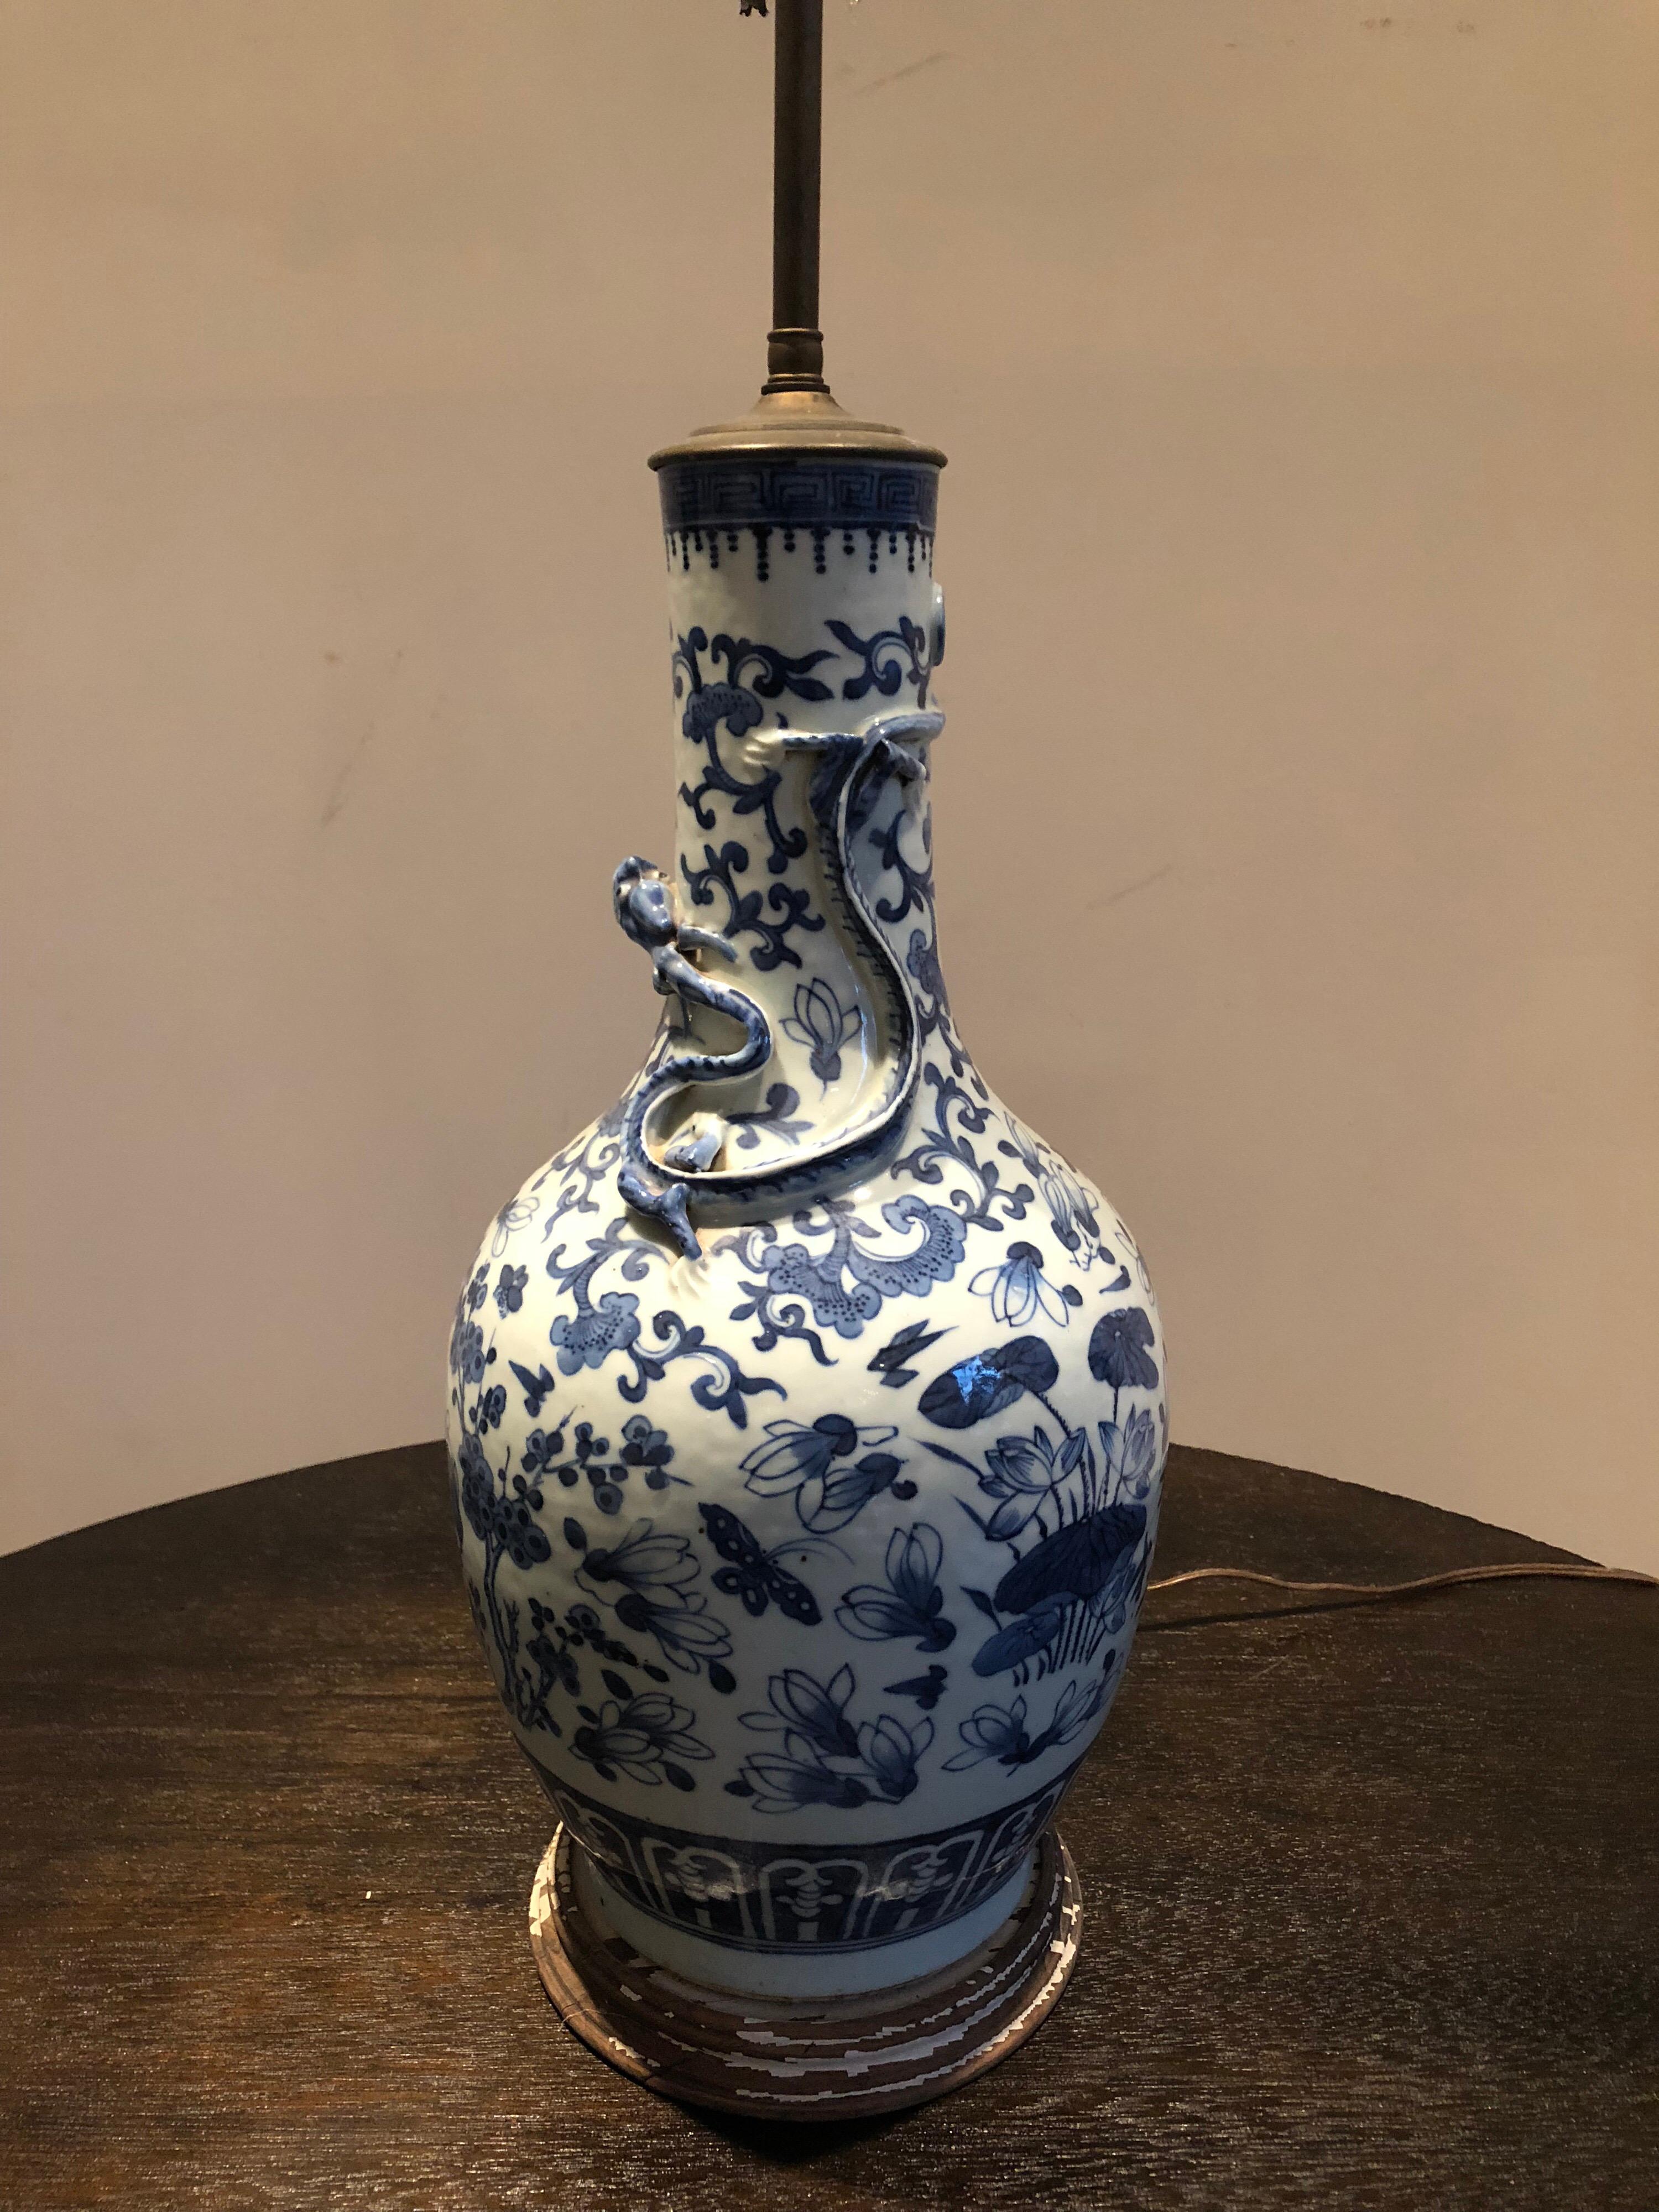 Eine chinesische Exportvase mit blau-weißem Motiv, jetzt als Lampe. Interessantes erhabenes Drachendetail. Sockel mit Distress-Lackierung. Zwei Steckdosen. Schirm nur für Ausstellungszwecke. Vase misst 19 